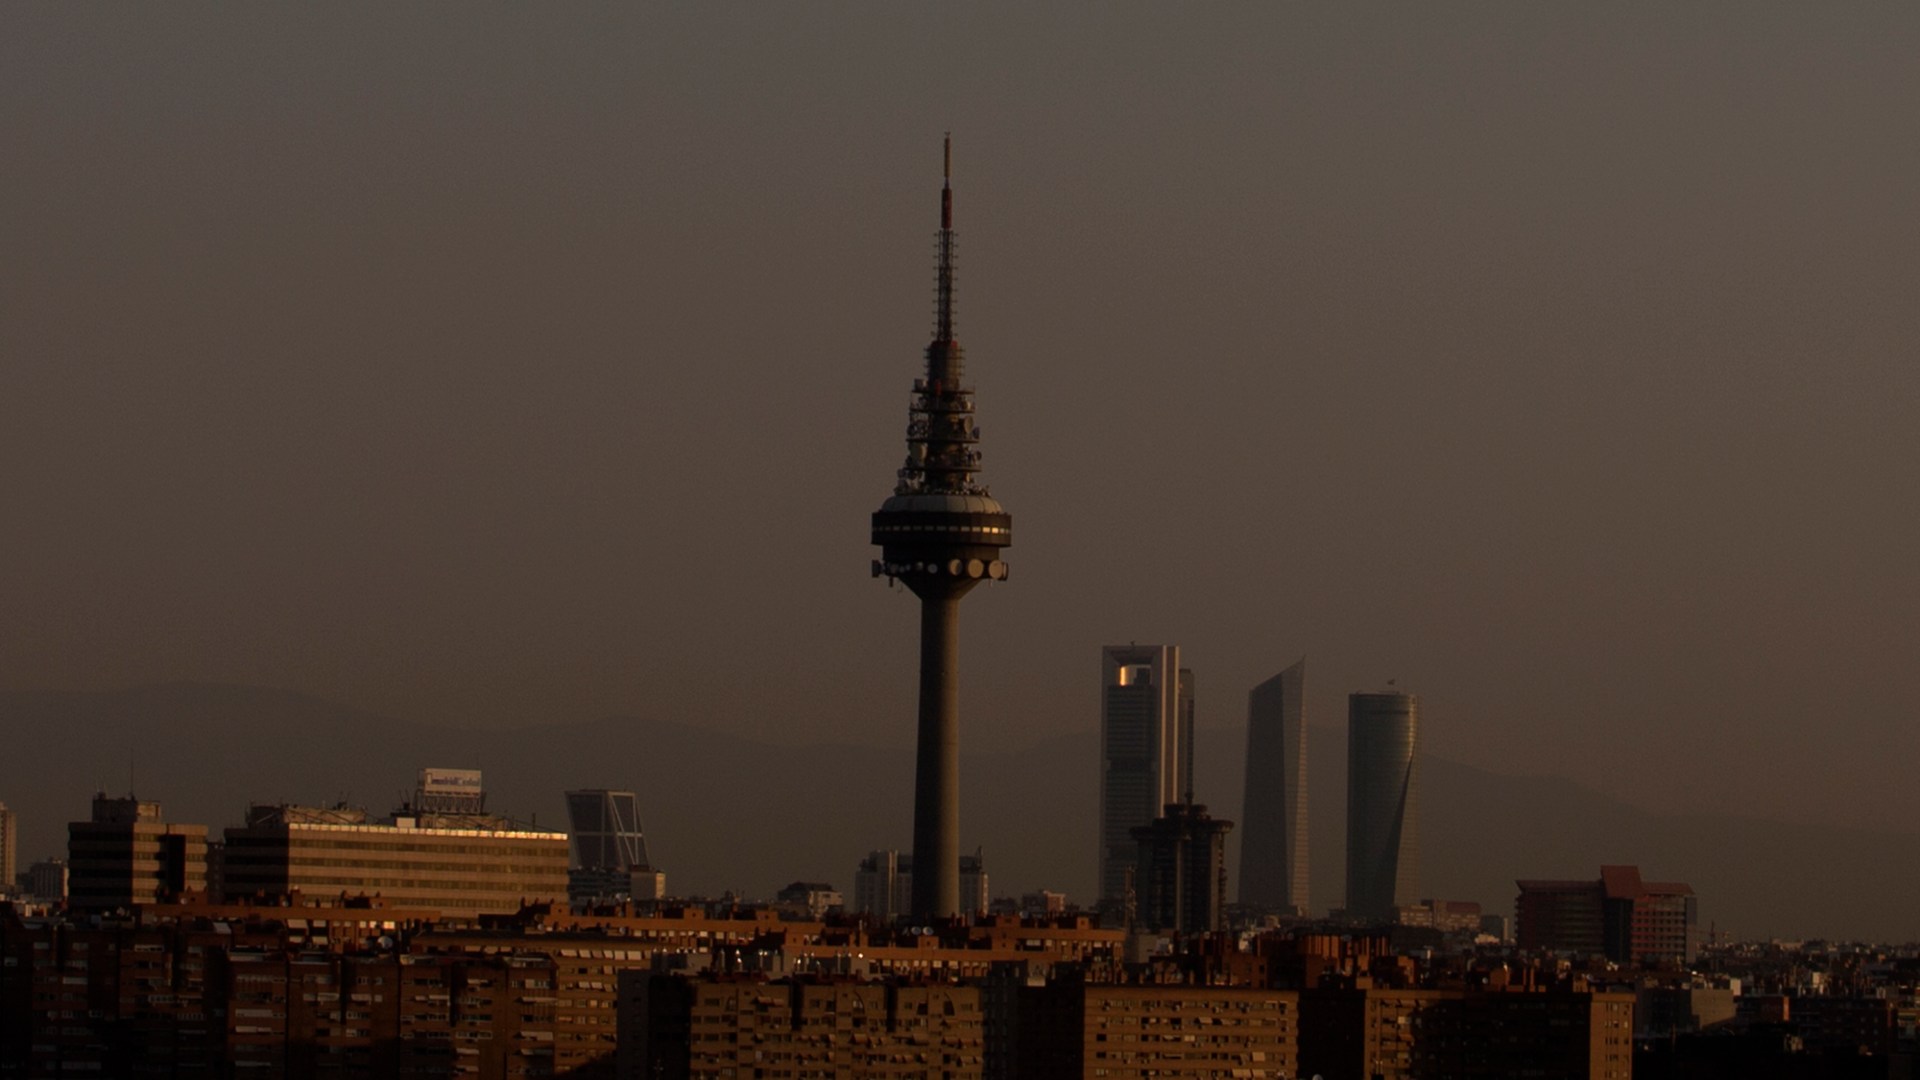 La polución en Madrid mata: ¿por qué no actuamos ya? 1